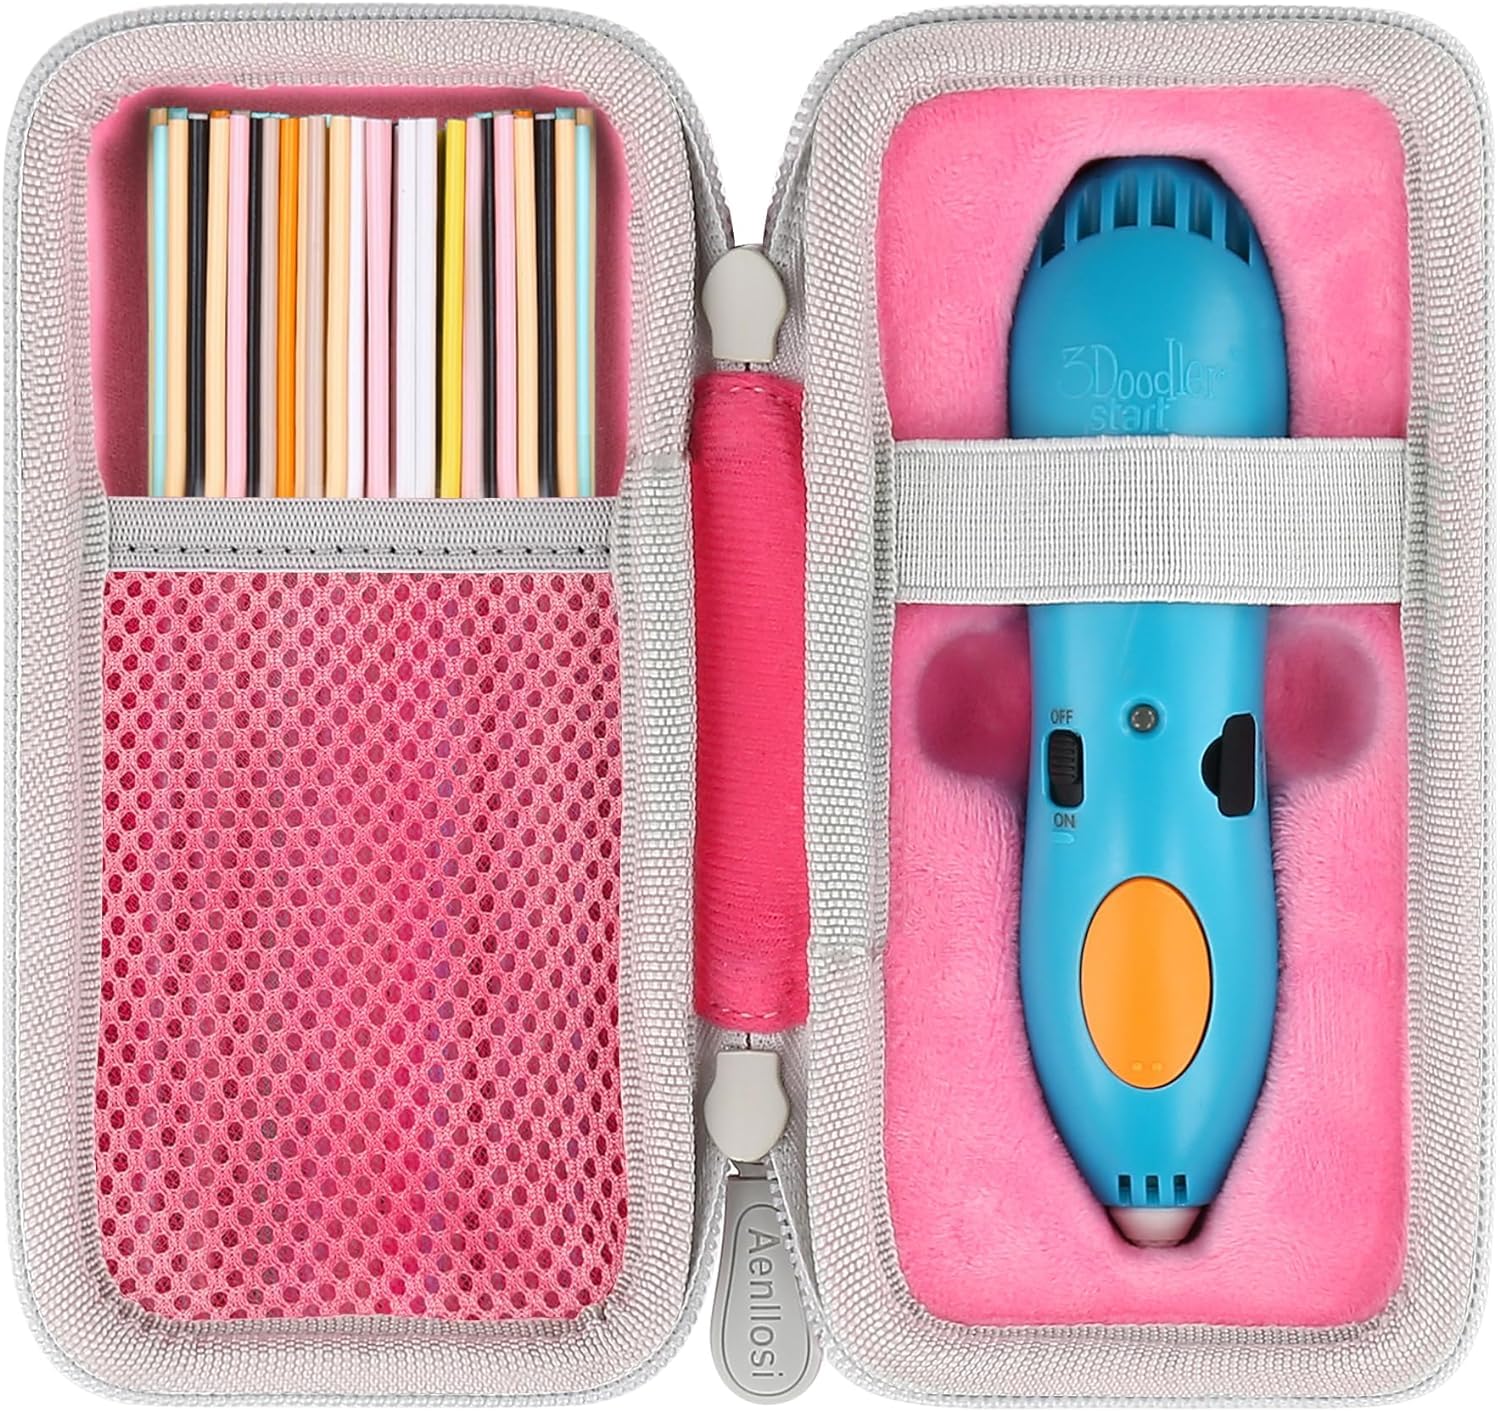 ケースのみ 3Doodler Start + プレゼント 子供 おもちゃ 知育 玩具 アートペン フィラメン ピンク 専用収納ケース-Aenllosi